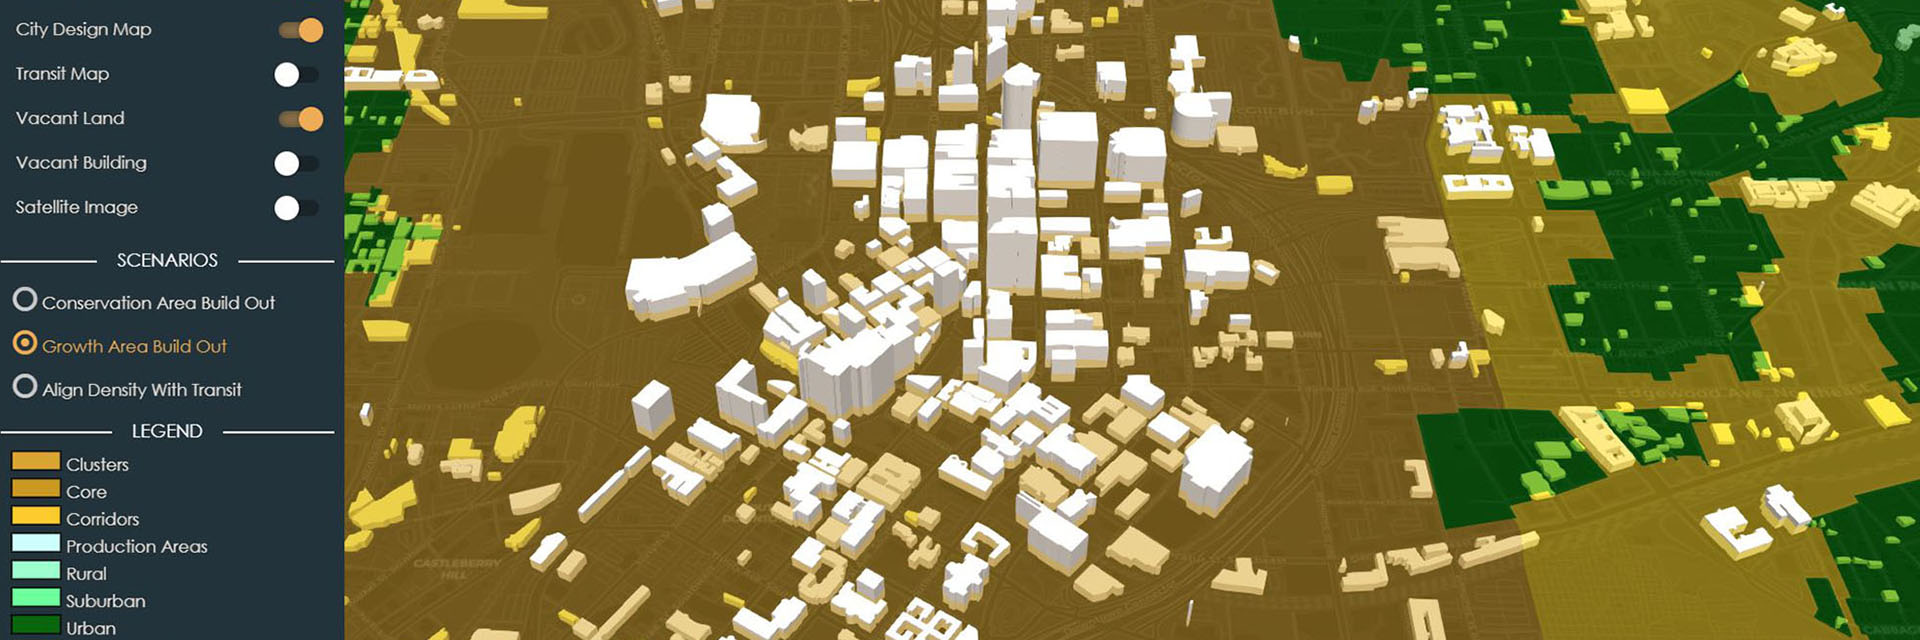 Screen shot of a 3D rendering of an urban landscape.